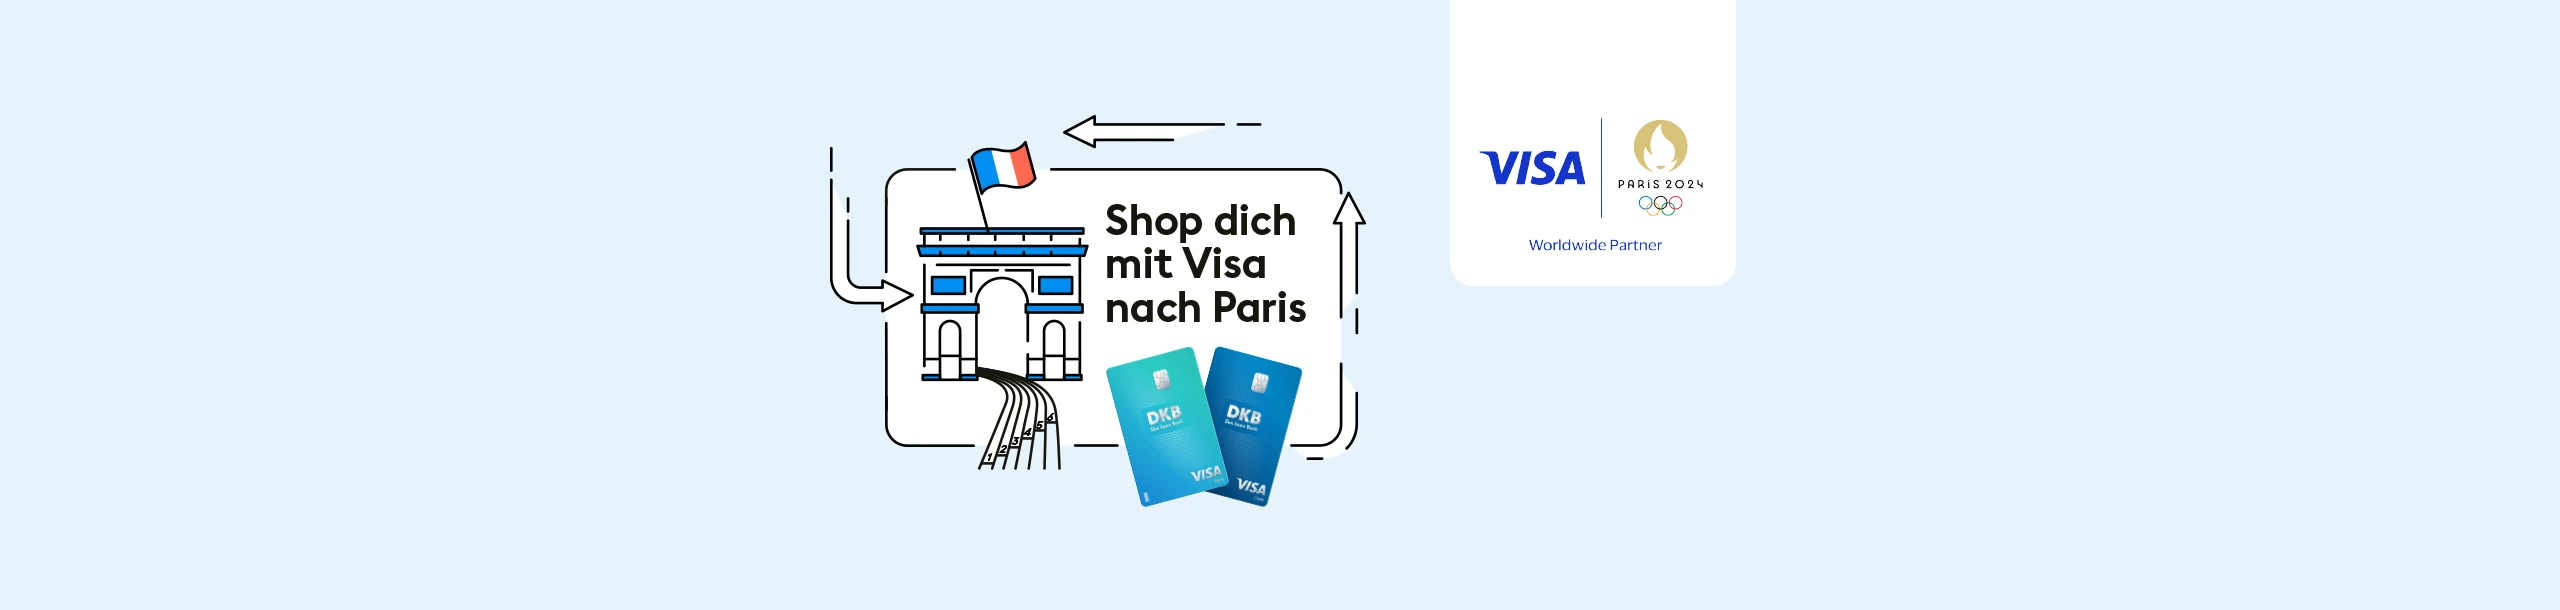 Illustration mit Eifelturm, Laufbahn, Visa Karten und den Schriftzug Shop dich mit Visa nach Paris.